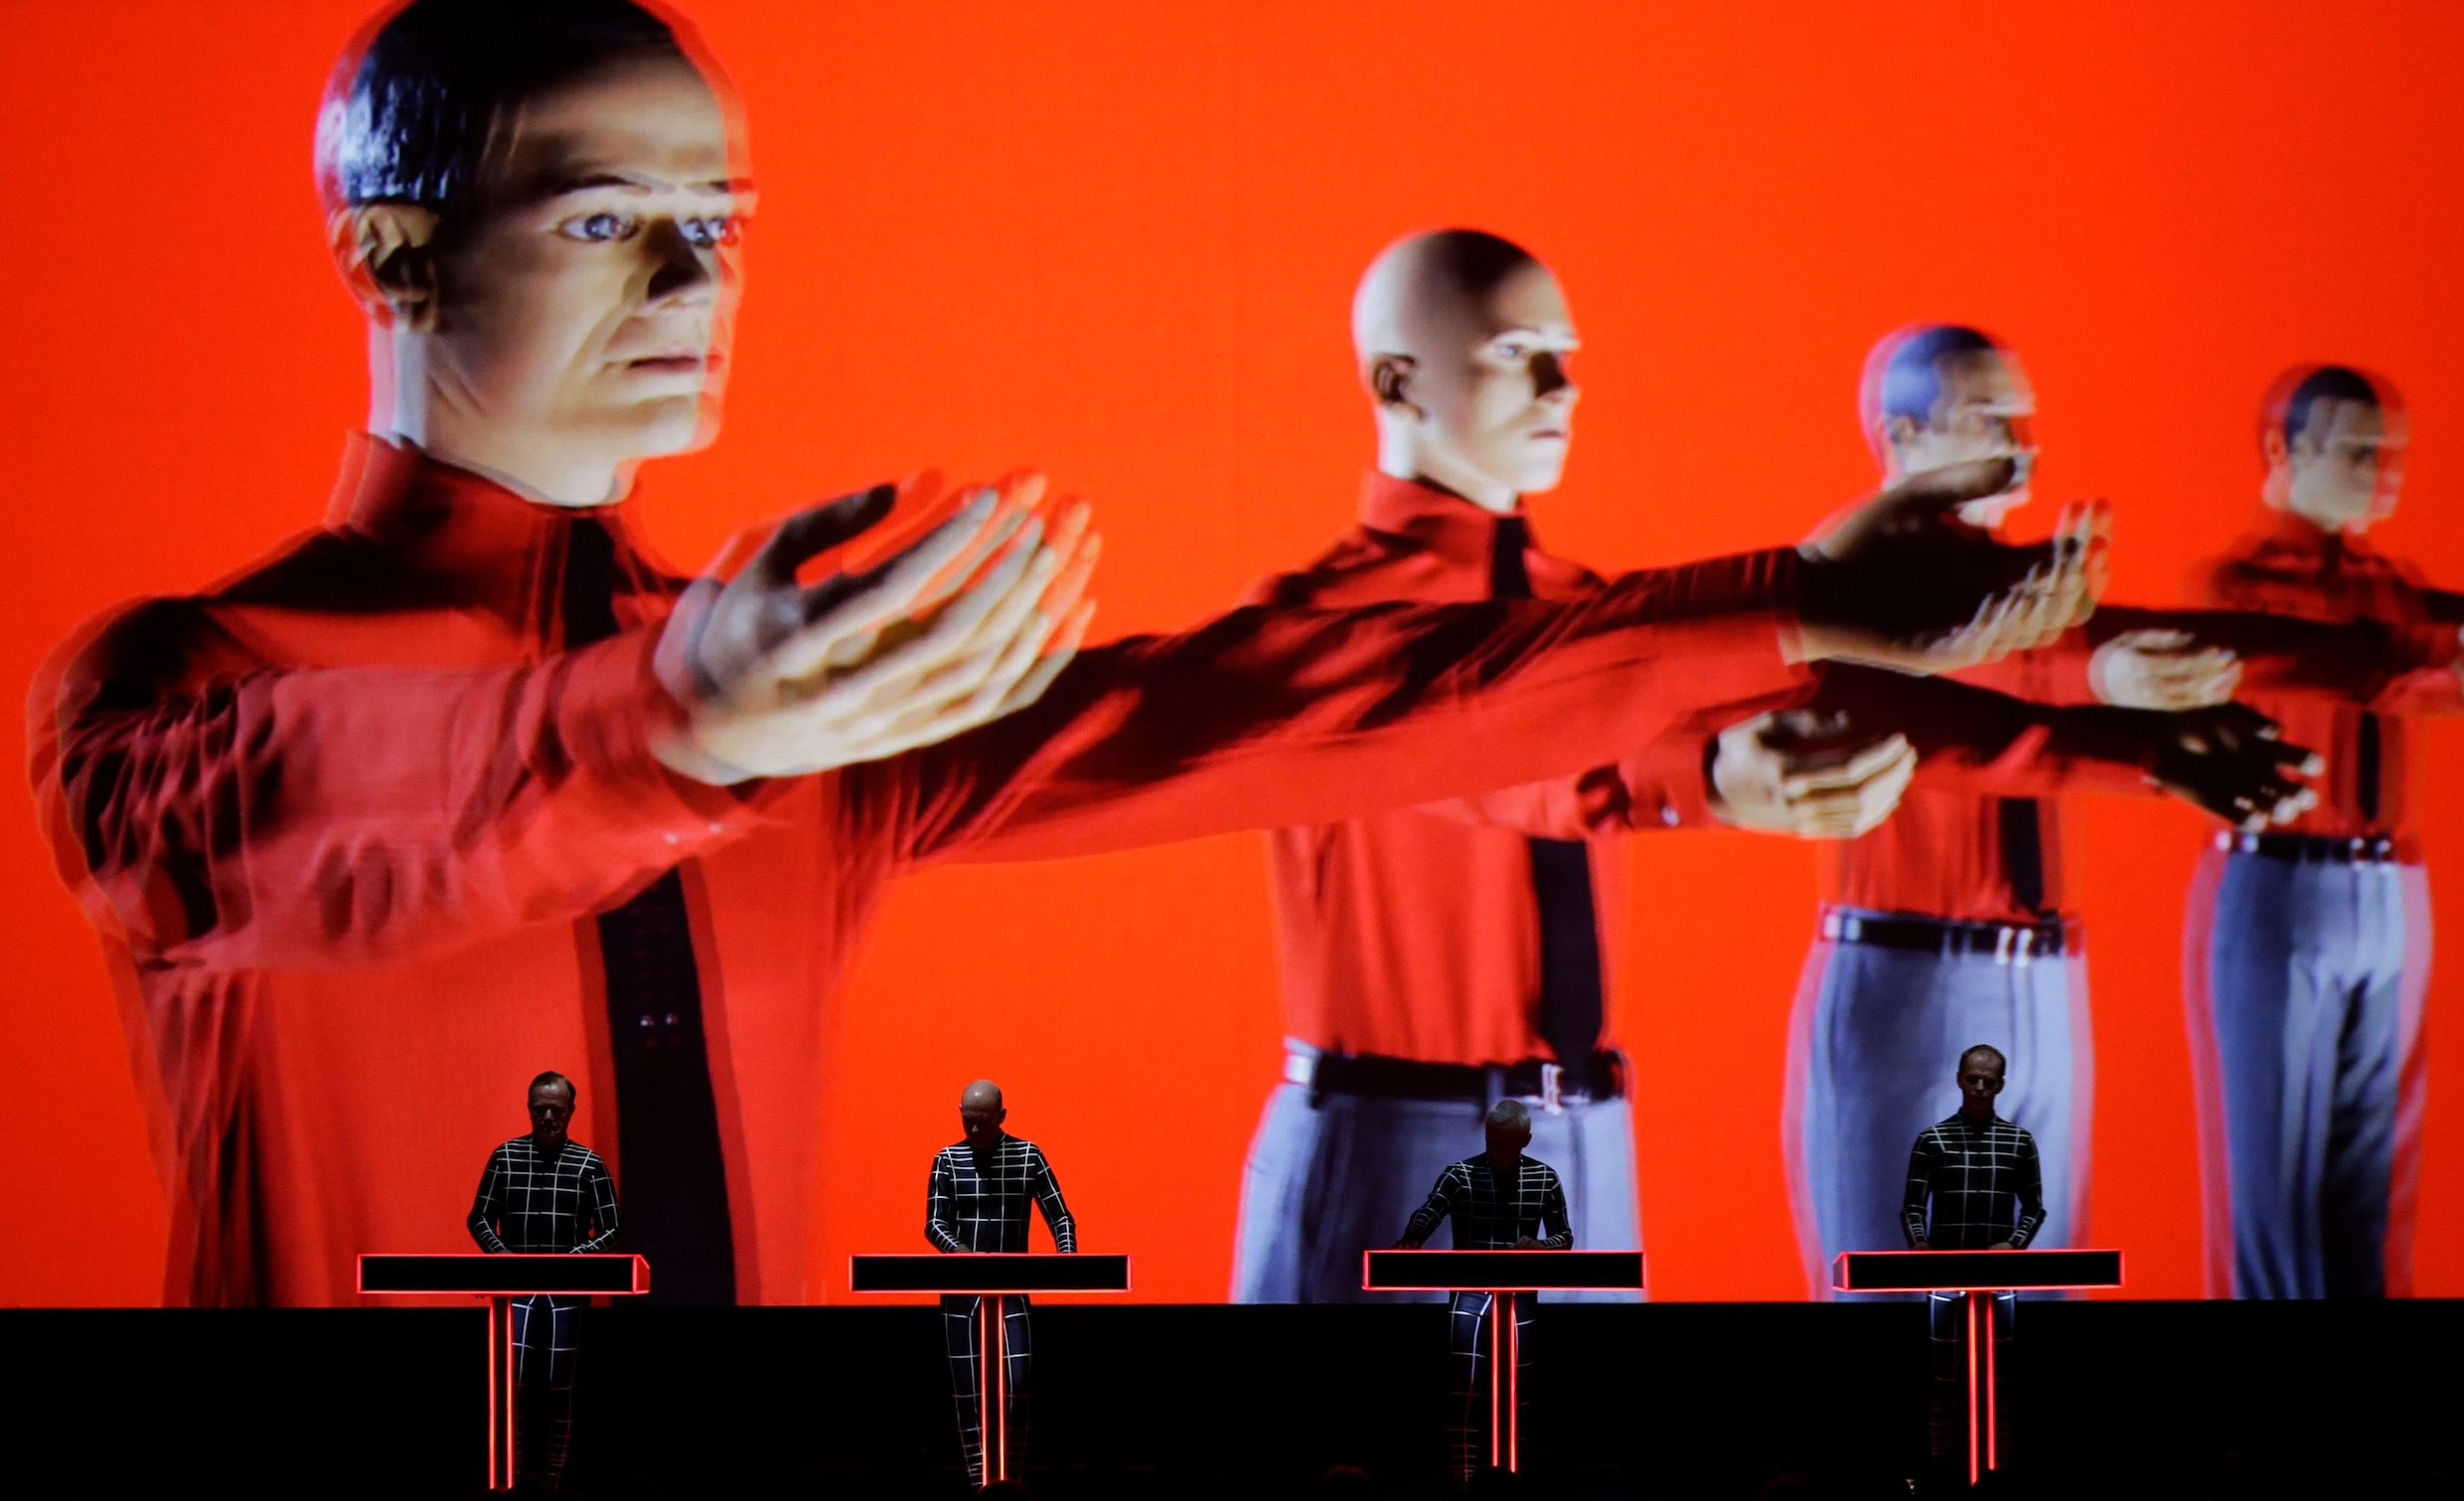 Zaterdag trapt Kraftwerk in Antwerpen zijn vierdaagse 3D-concertreeks af. Een vooruit/terugblik!